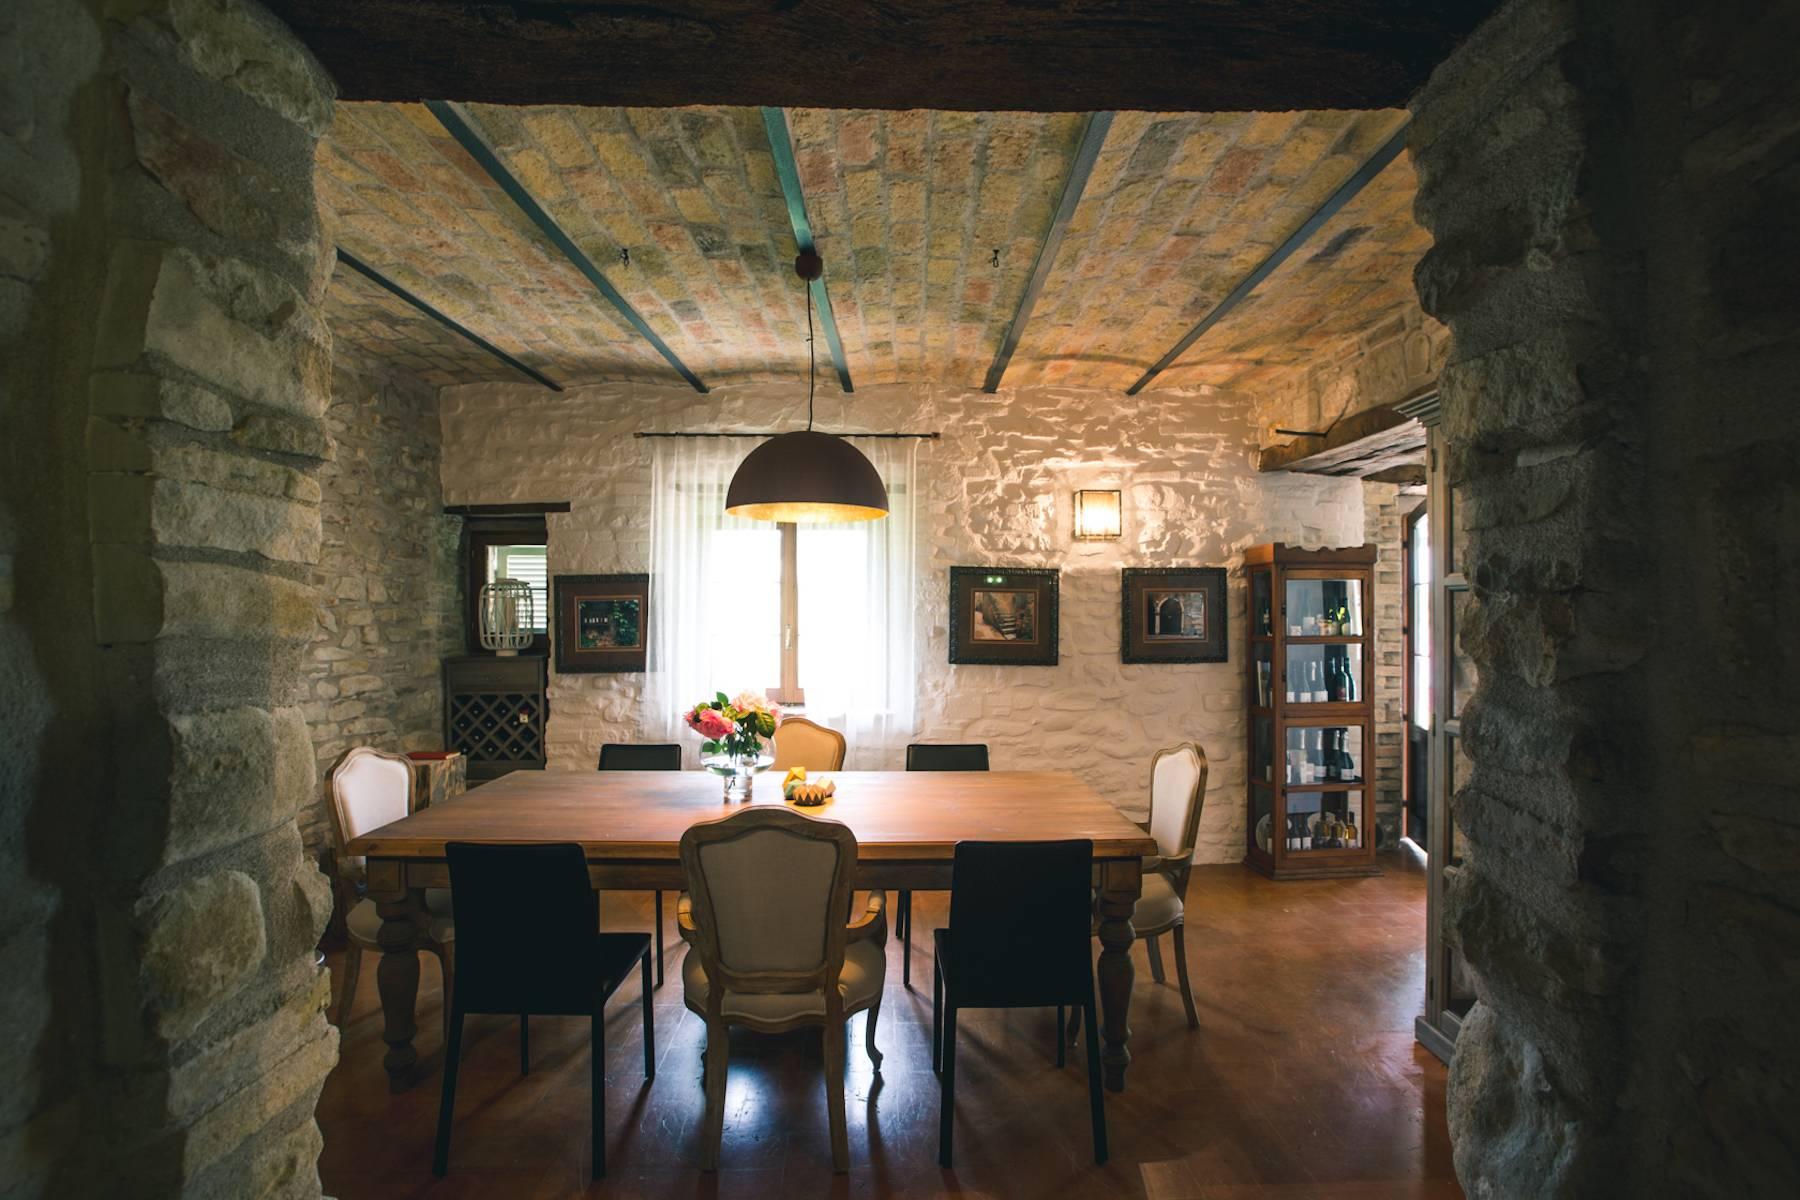 Splendidi casali in pietra, un restyling sofisticato di architettura rurale depoca - 8